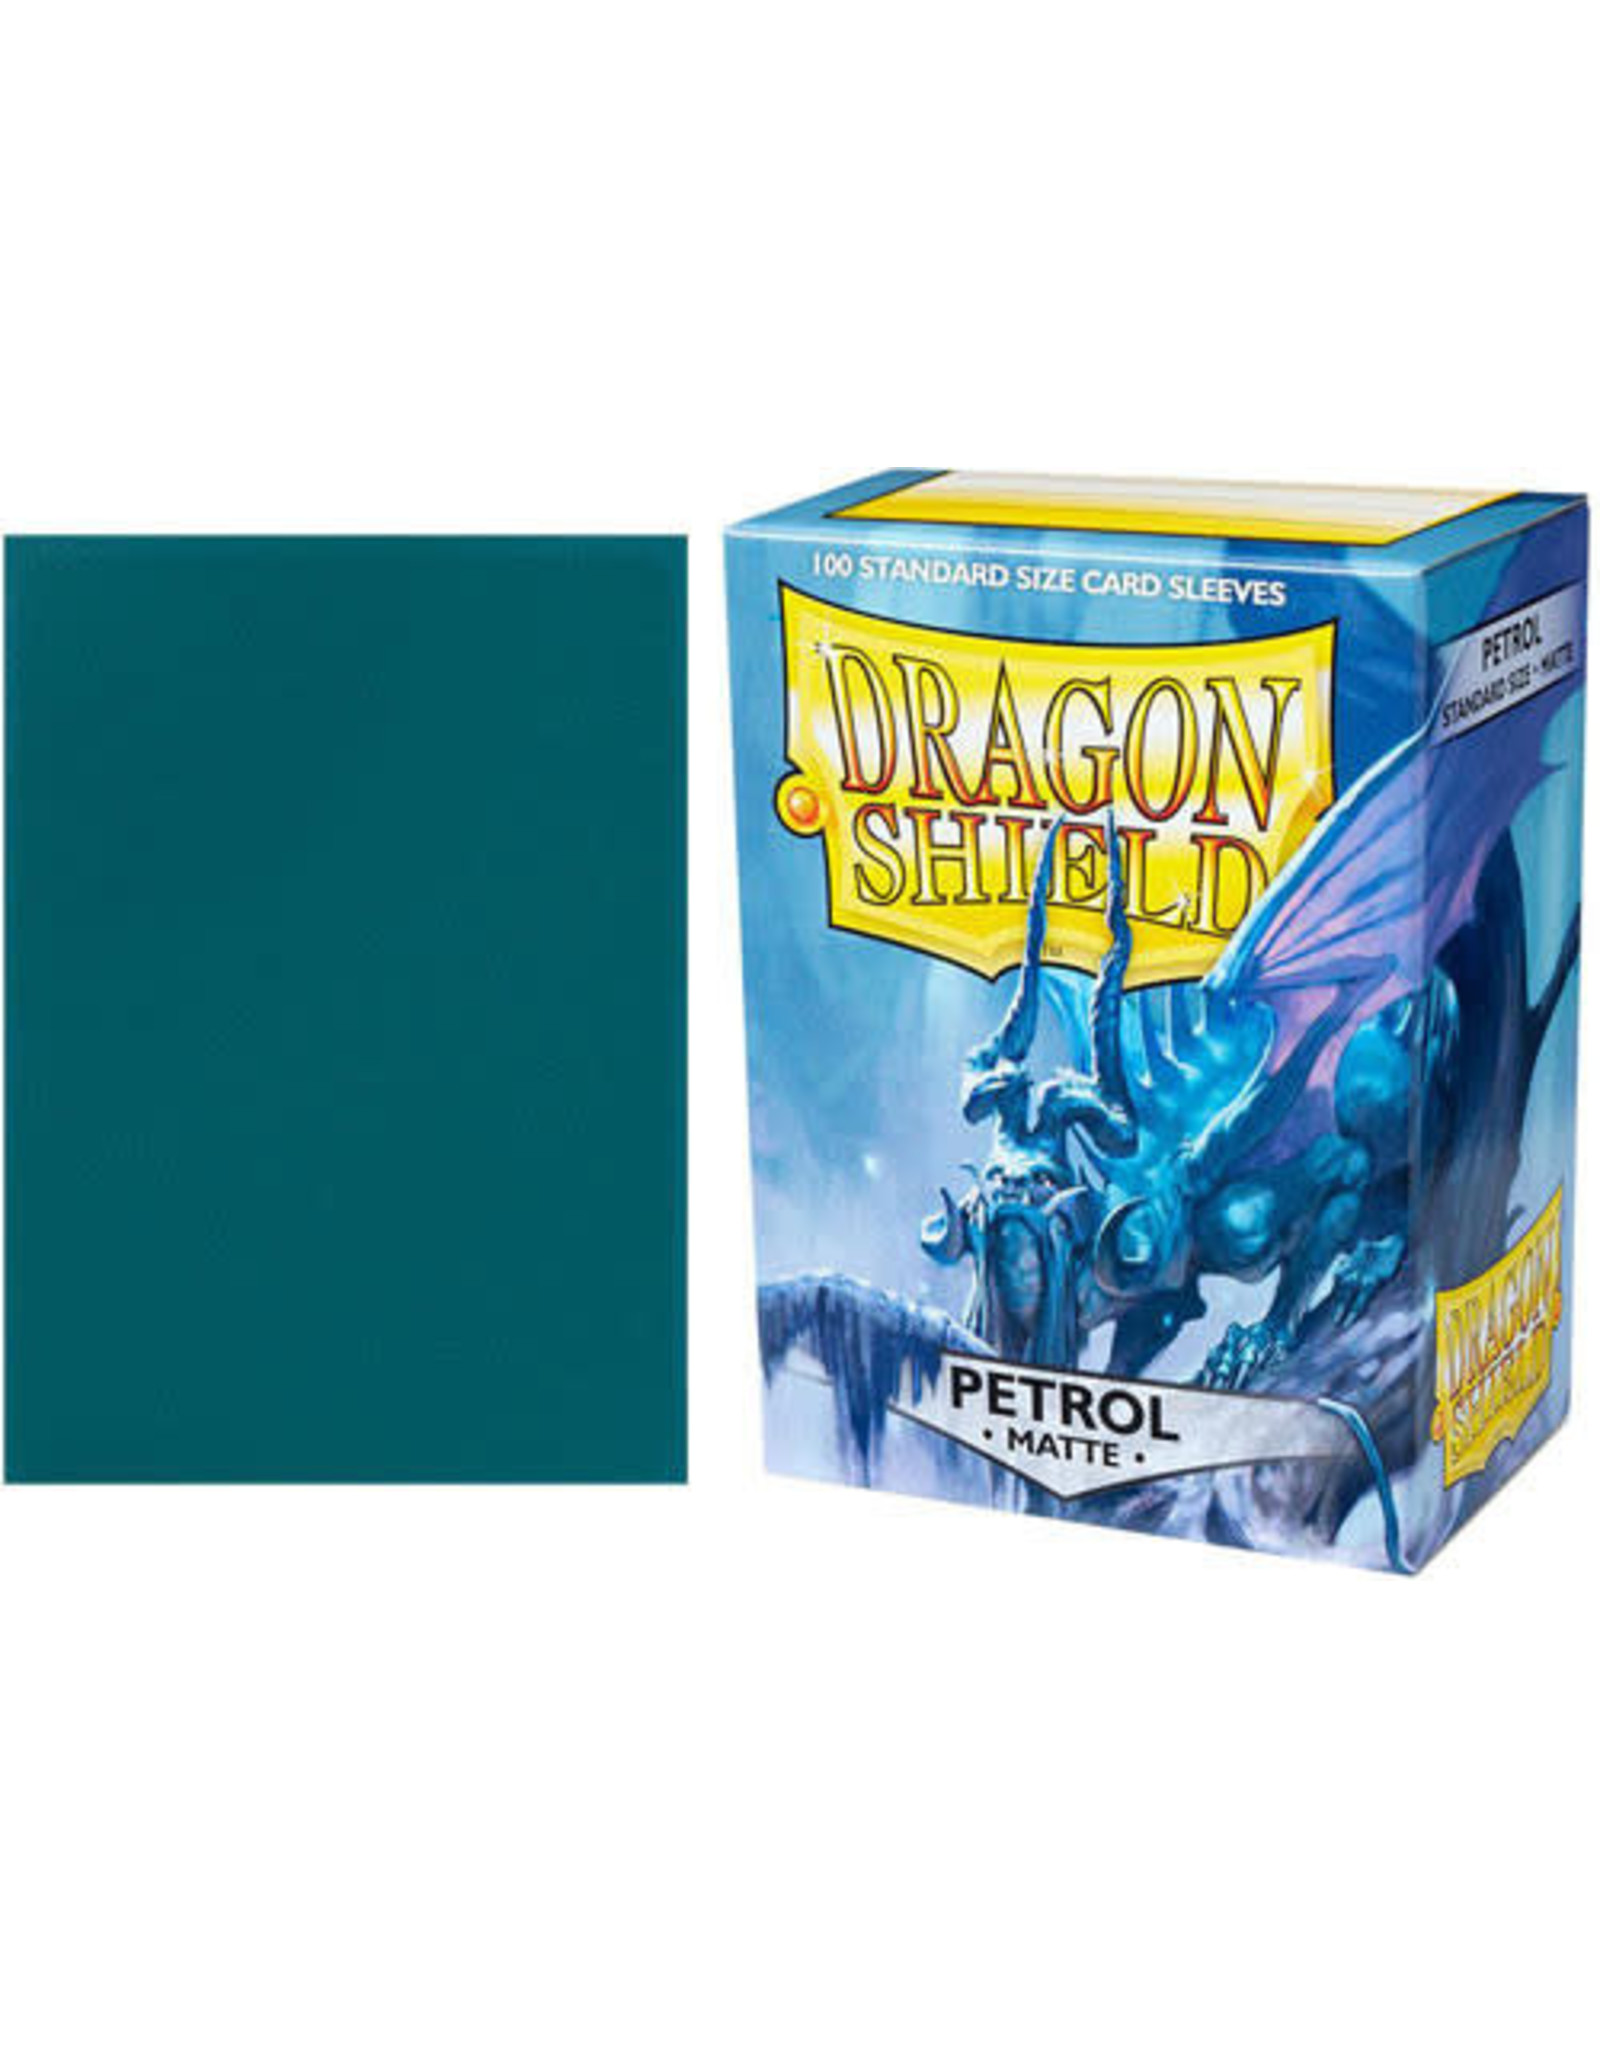 Dragon Shields Dragon Shield Sleeves 100ct - Matte Petrol